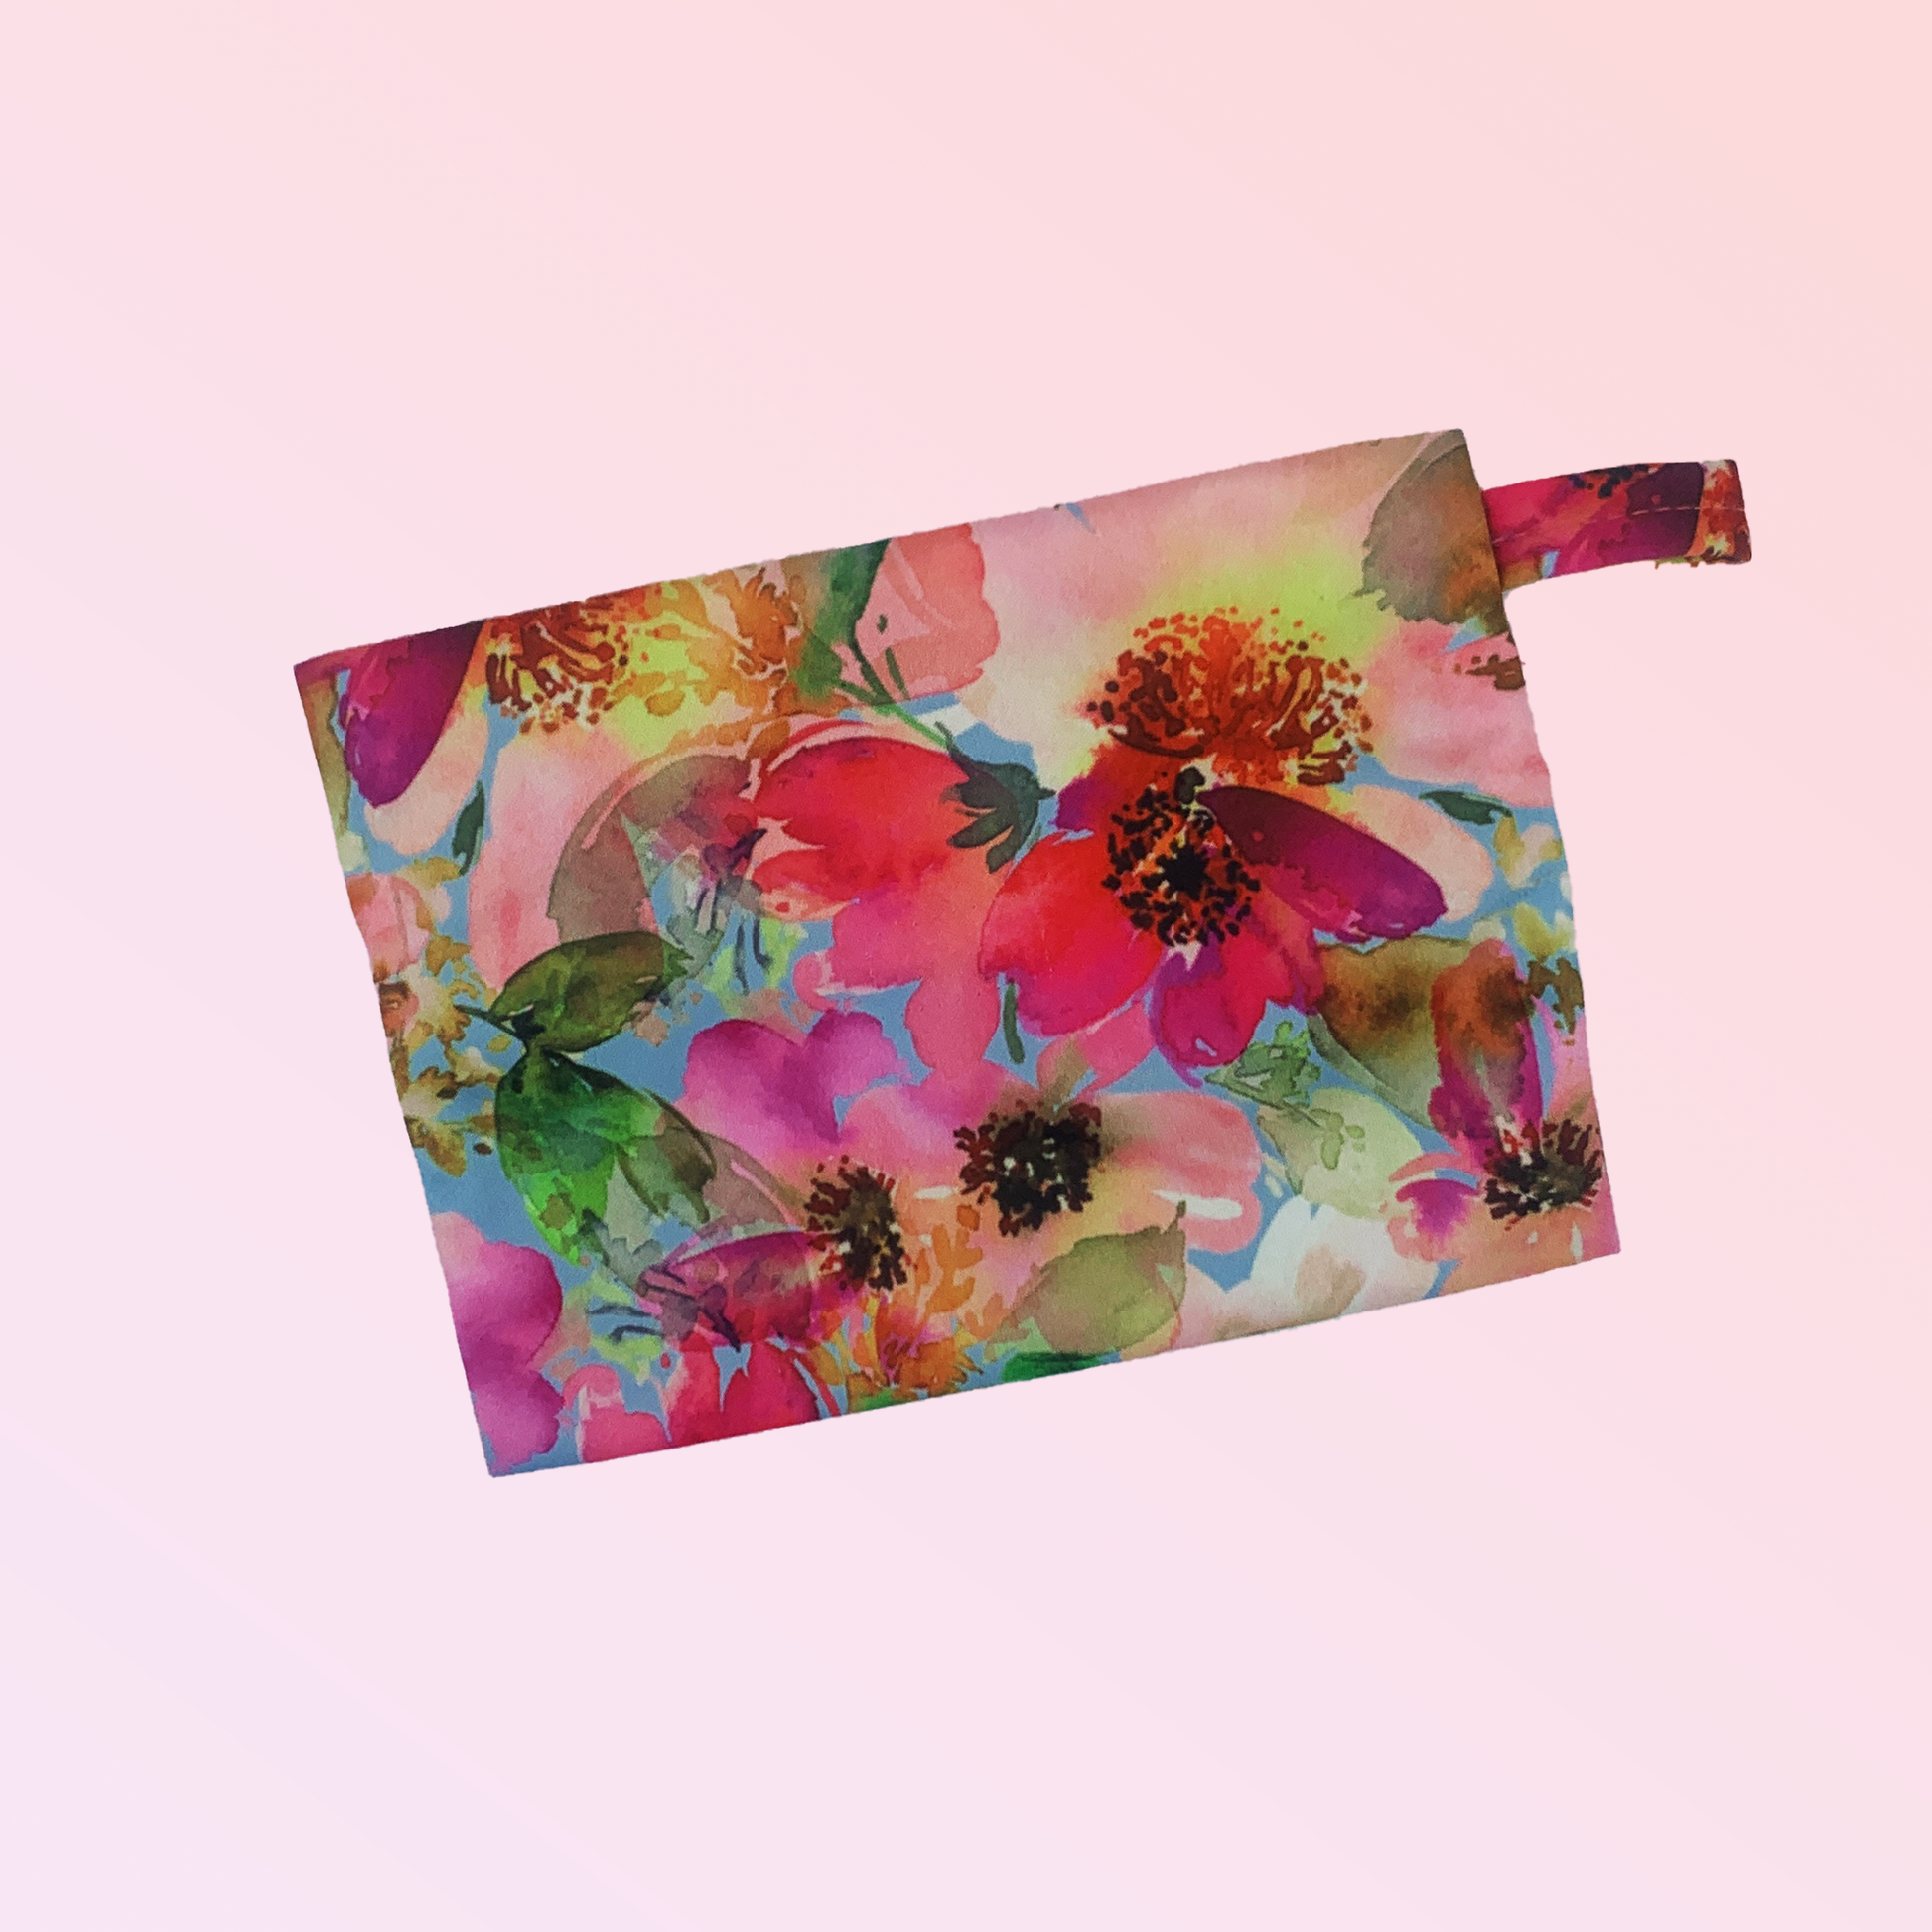  Pochette imperméable de transport design rose fleuris peps à tirette pour ranger tes serviettes hygiéniques, cups ou culottes menstruelles - Pussyfy